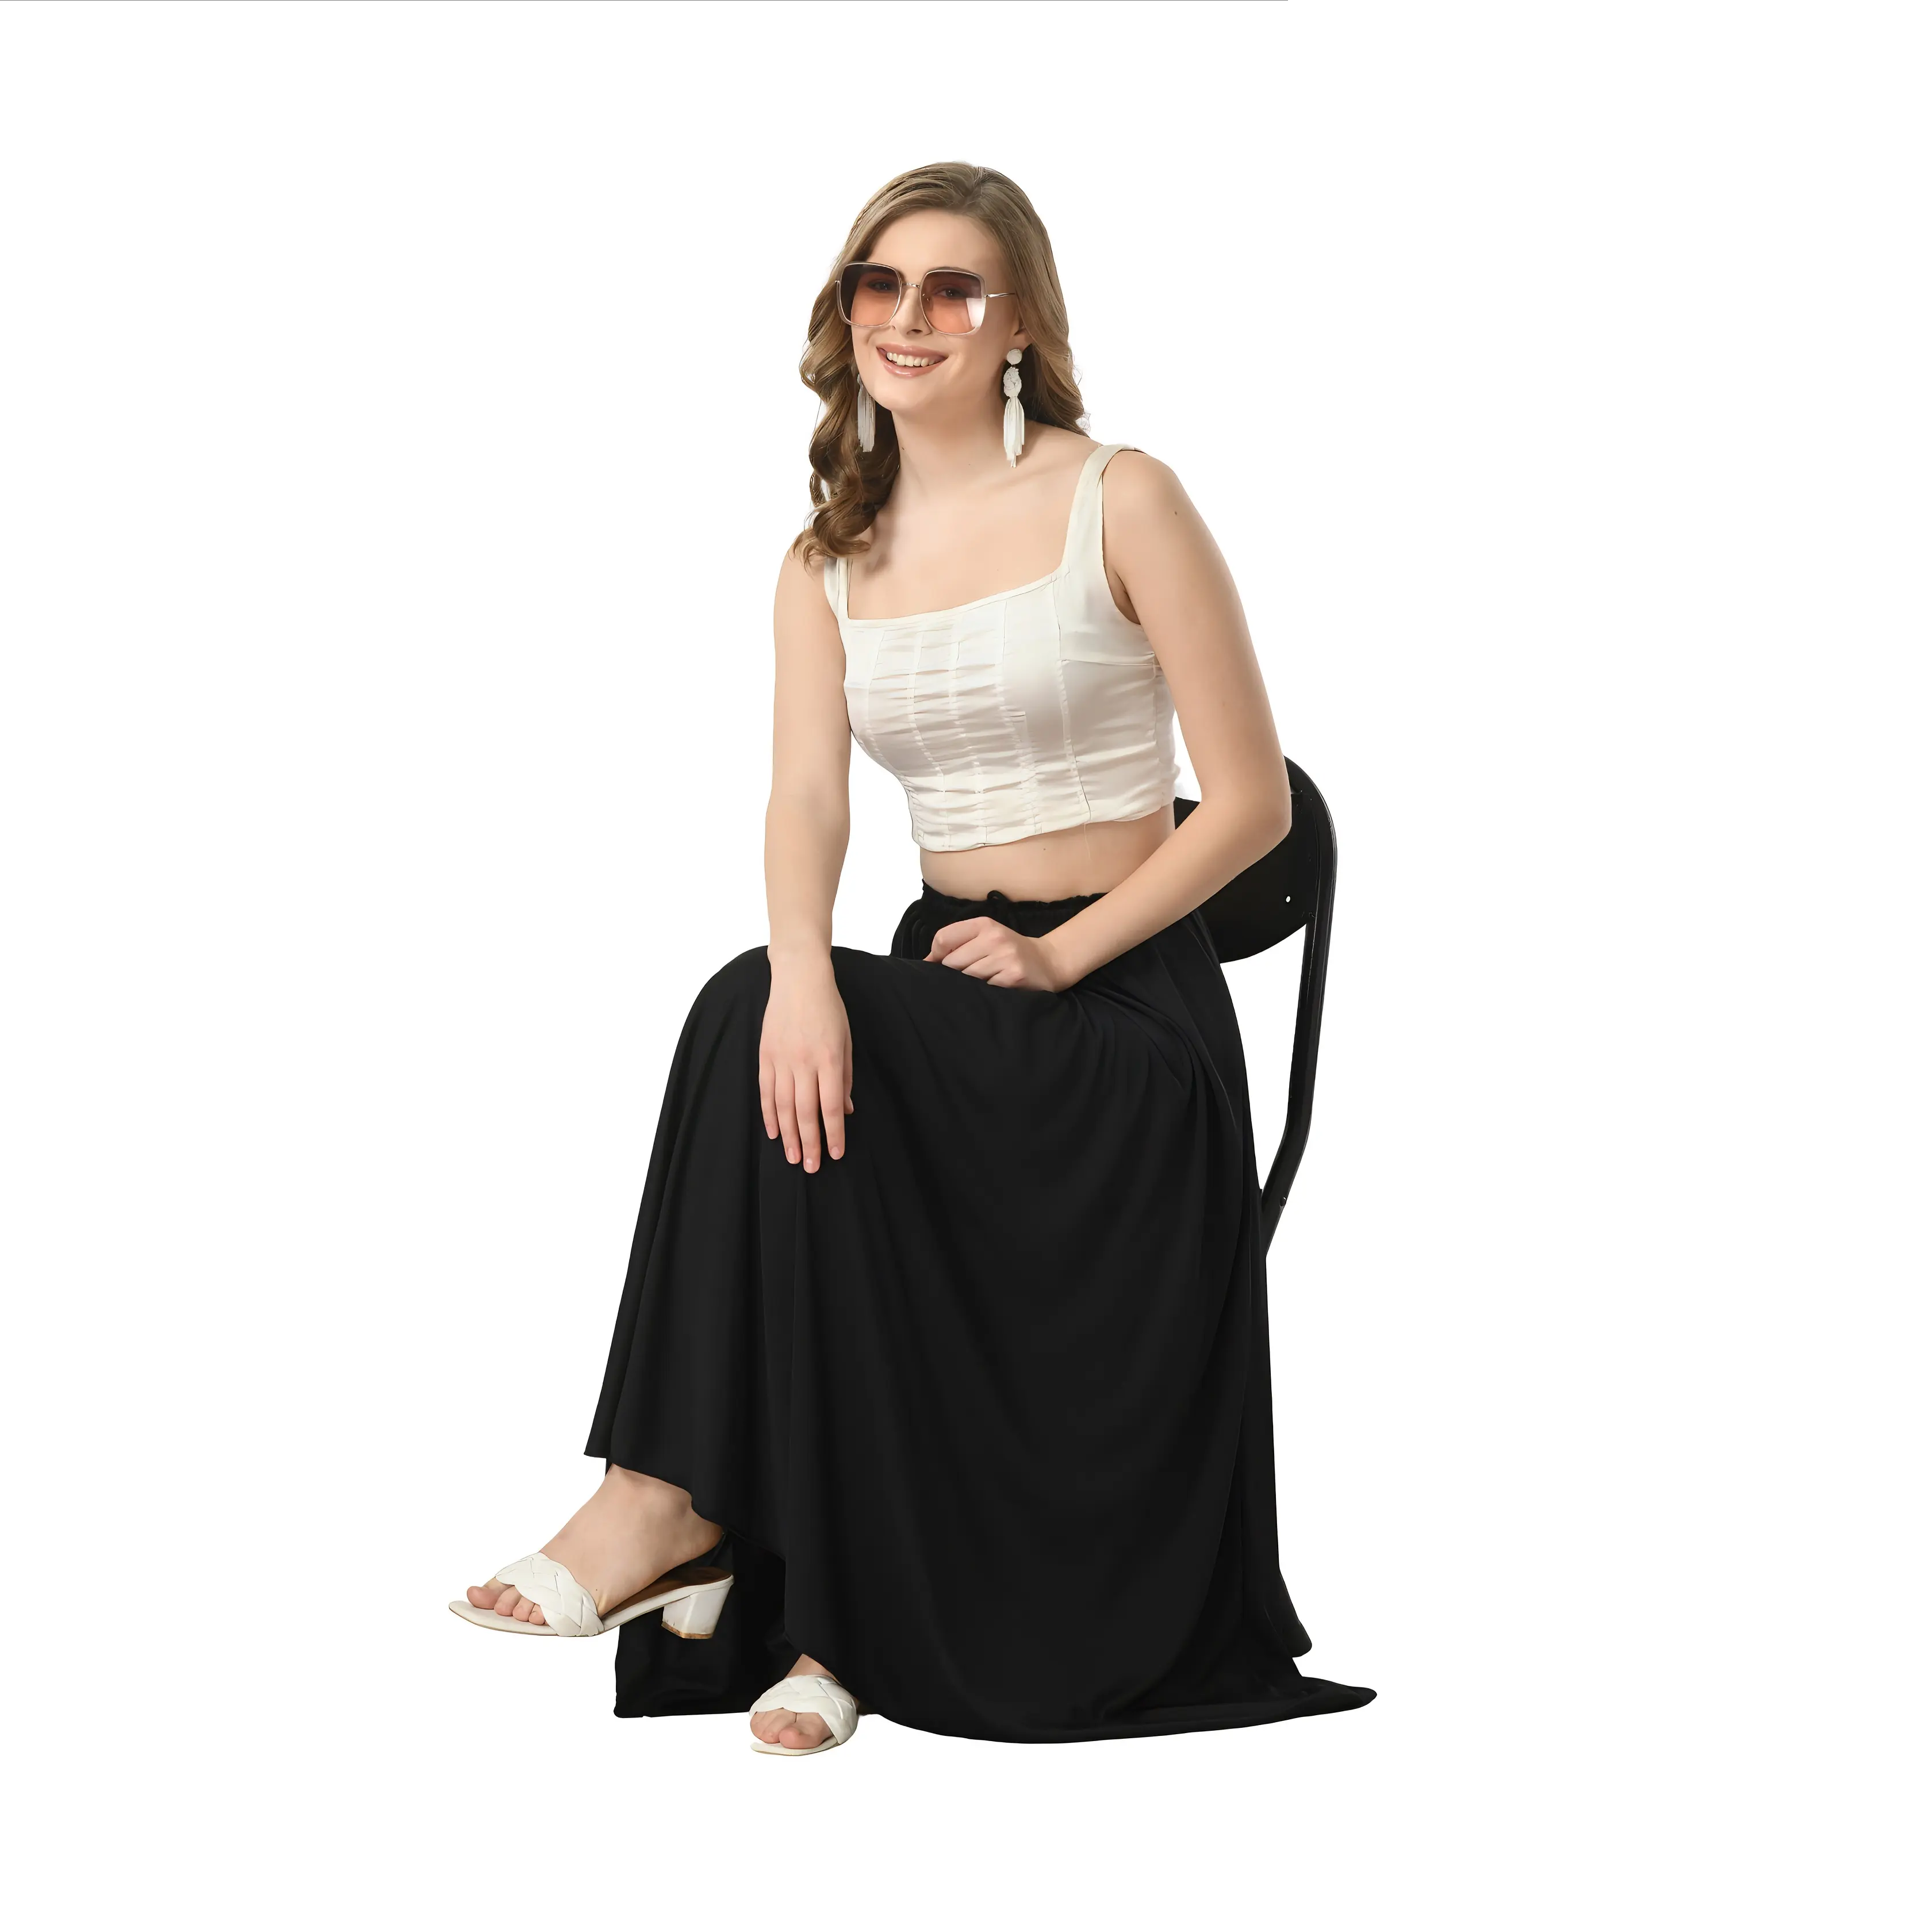 उच्च गुणवत्ता वाले डिज़ाइन प्लीटेड पॉली स्पैन्डेक्स लूज़ कमर सॉलिड प्लेन काली लंबी स्कर्ट महिलाओं के लिए सीधे स्कर्ट प्लस साइज़